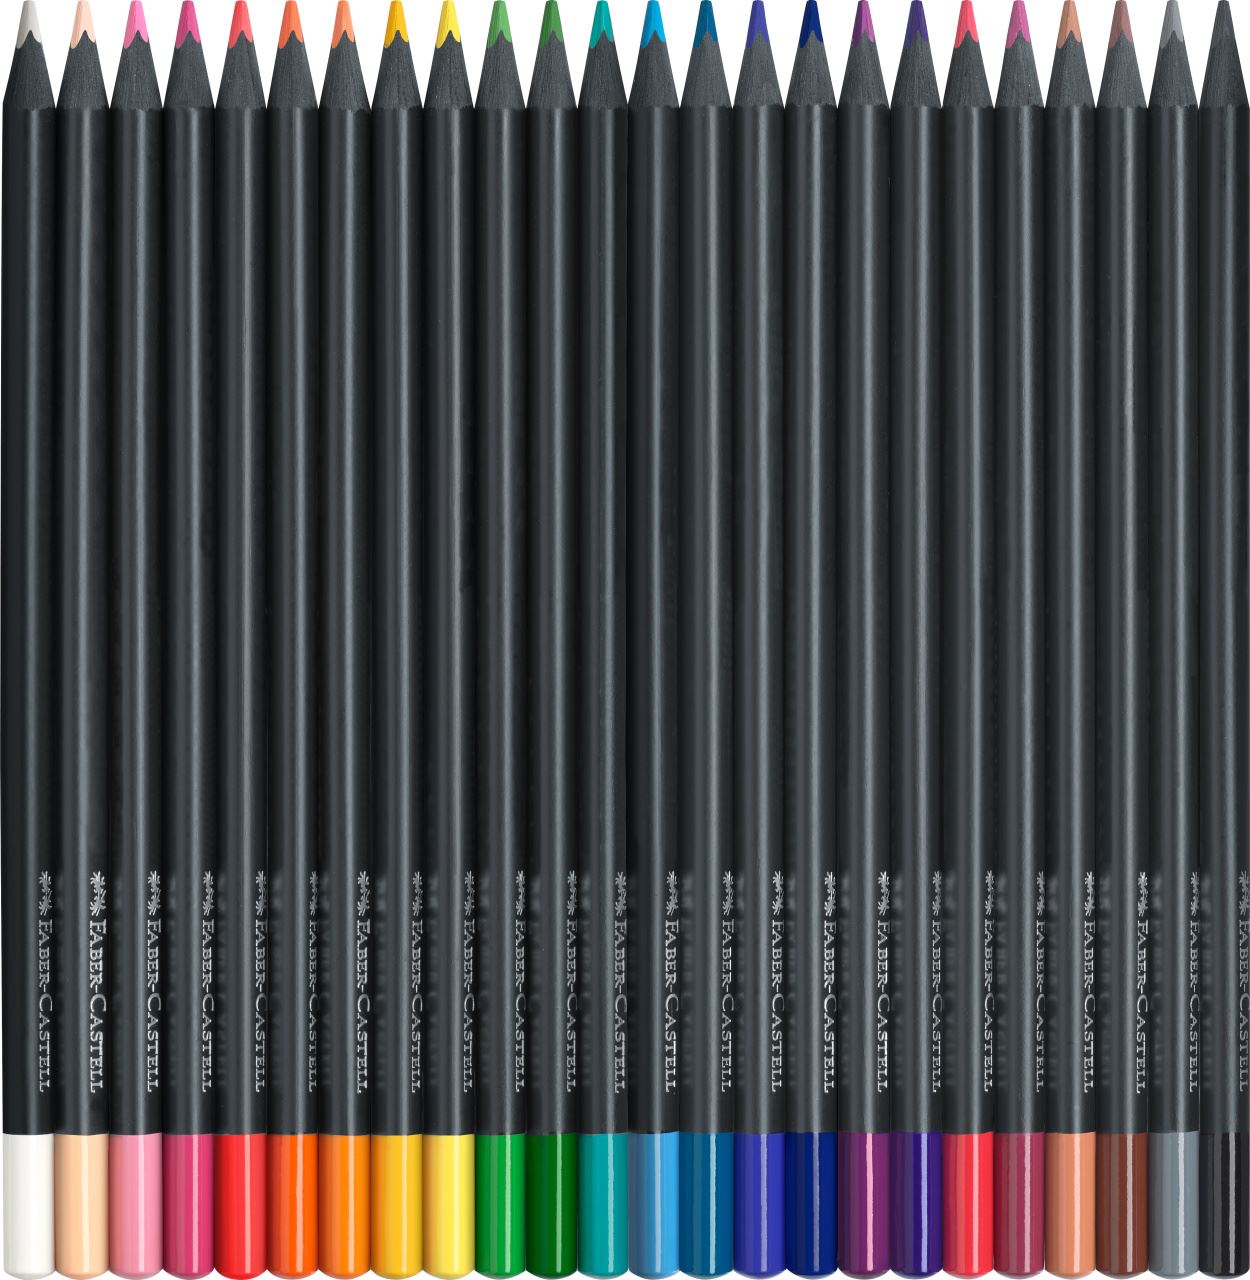 Faber-Castell - Crayons de couleur Black Edition, étui en carton de 24